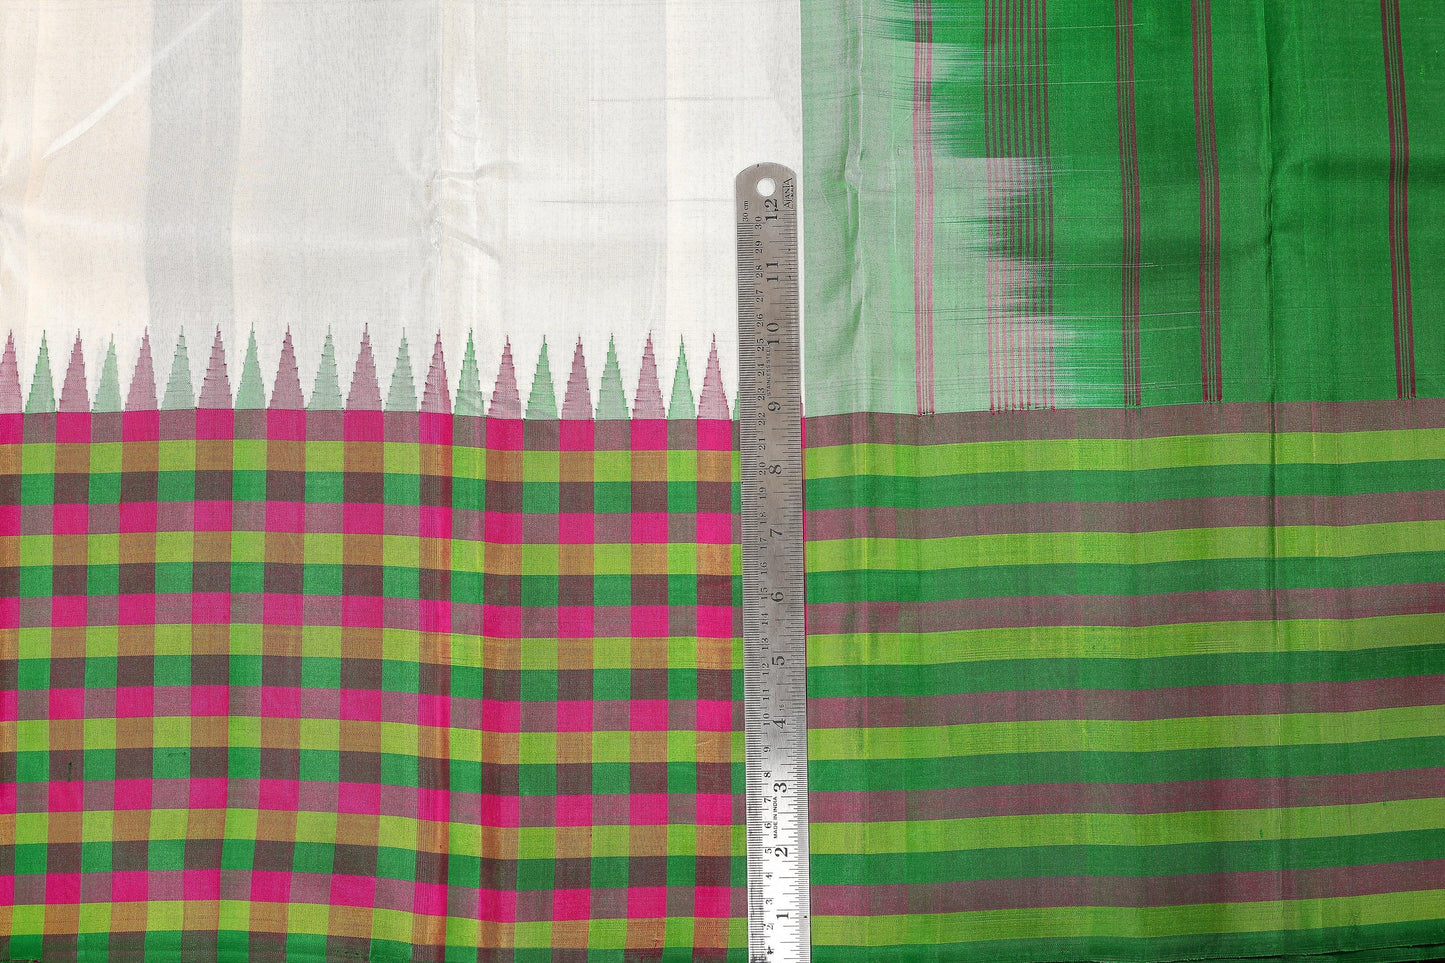 Temple Border Handwoven Pure Silks Saree - Multicolour Checks - PVA 0418 1229 - Silk Sari - Panjavarnam